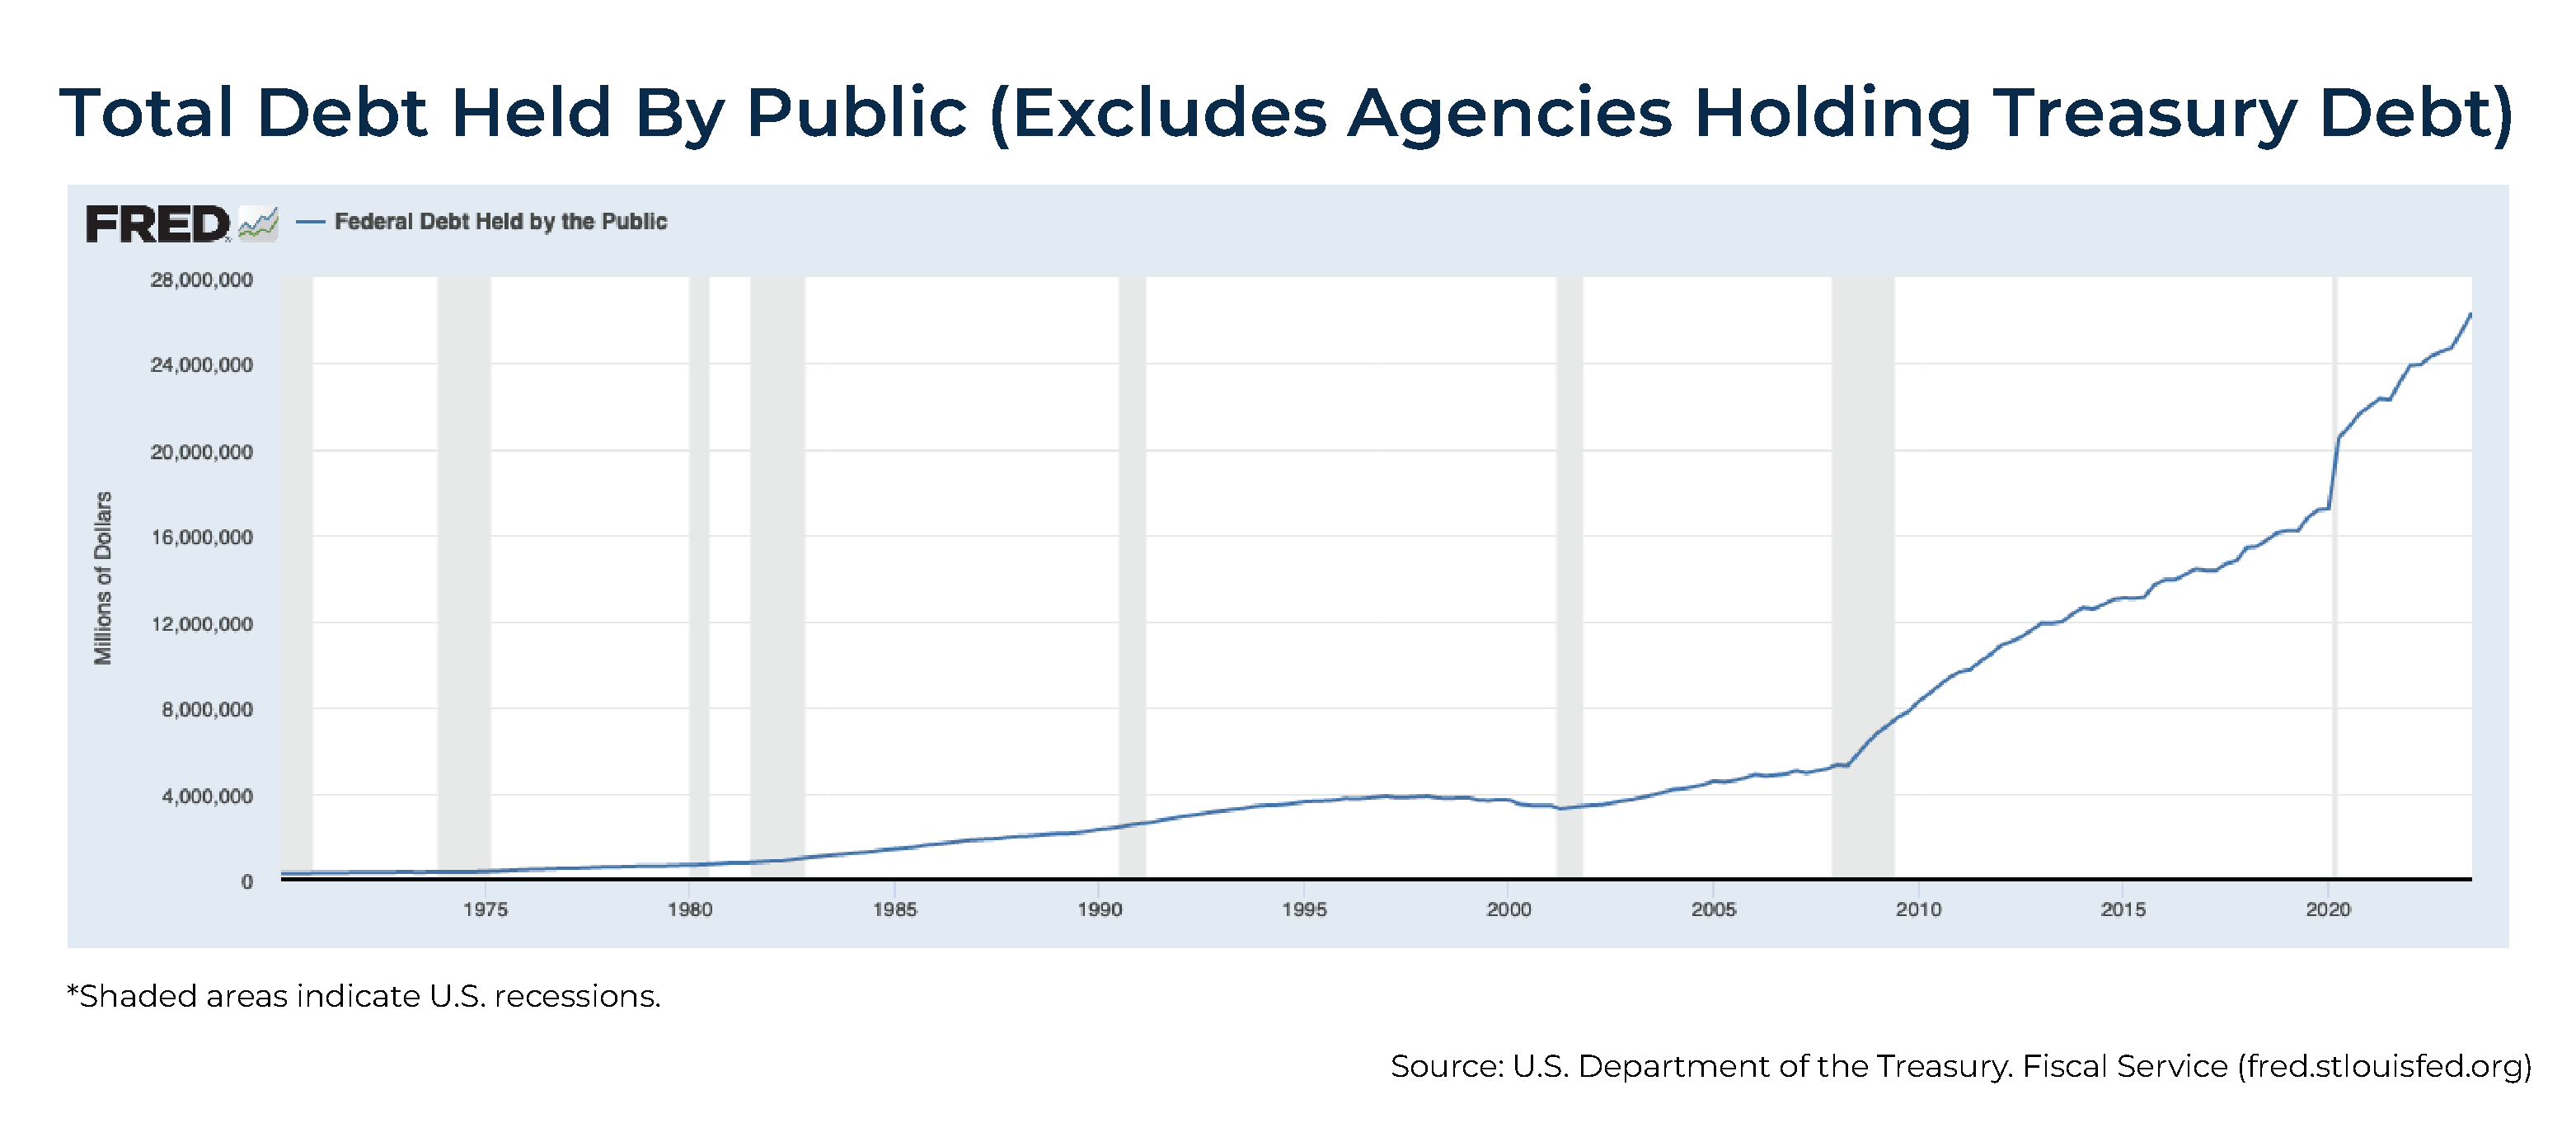 Total Debt Held By Public (Excludes Agencies Holding Treasury Debt)